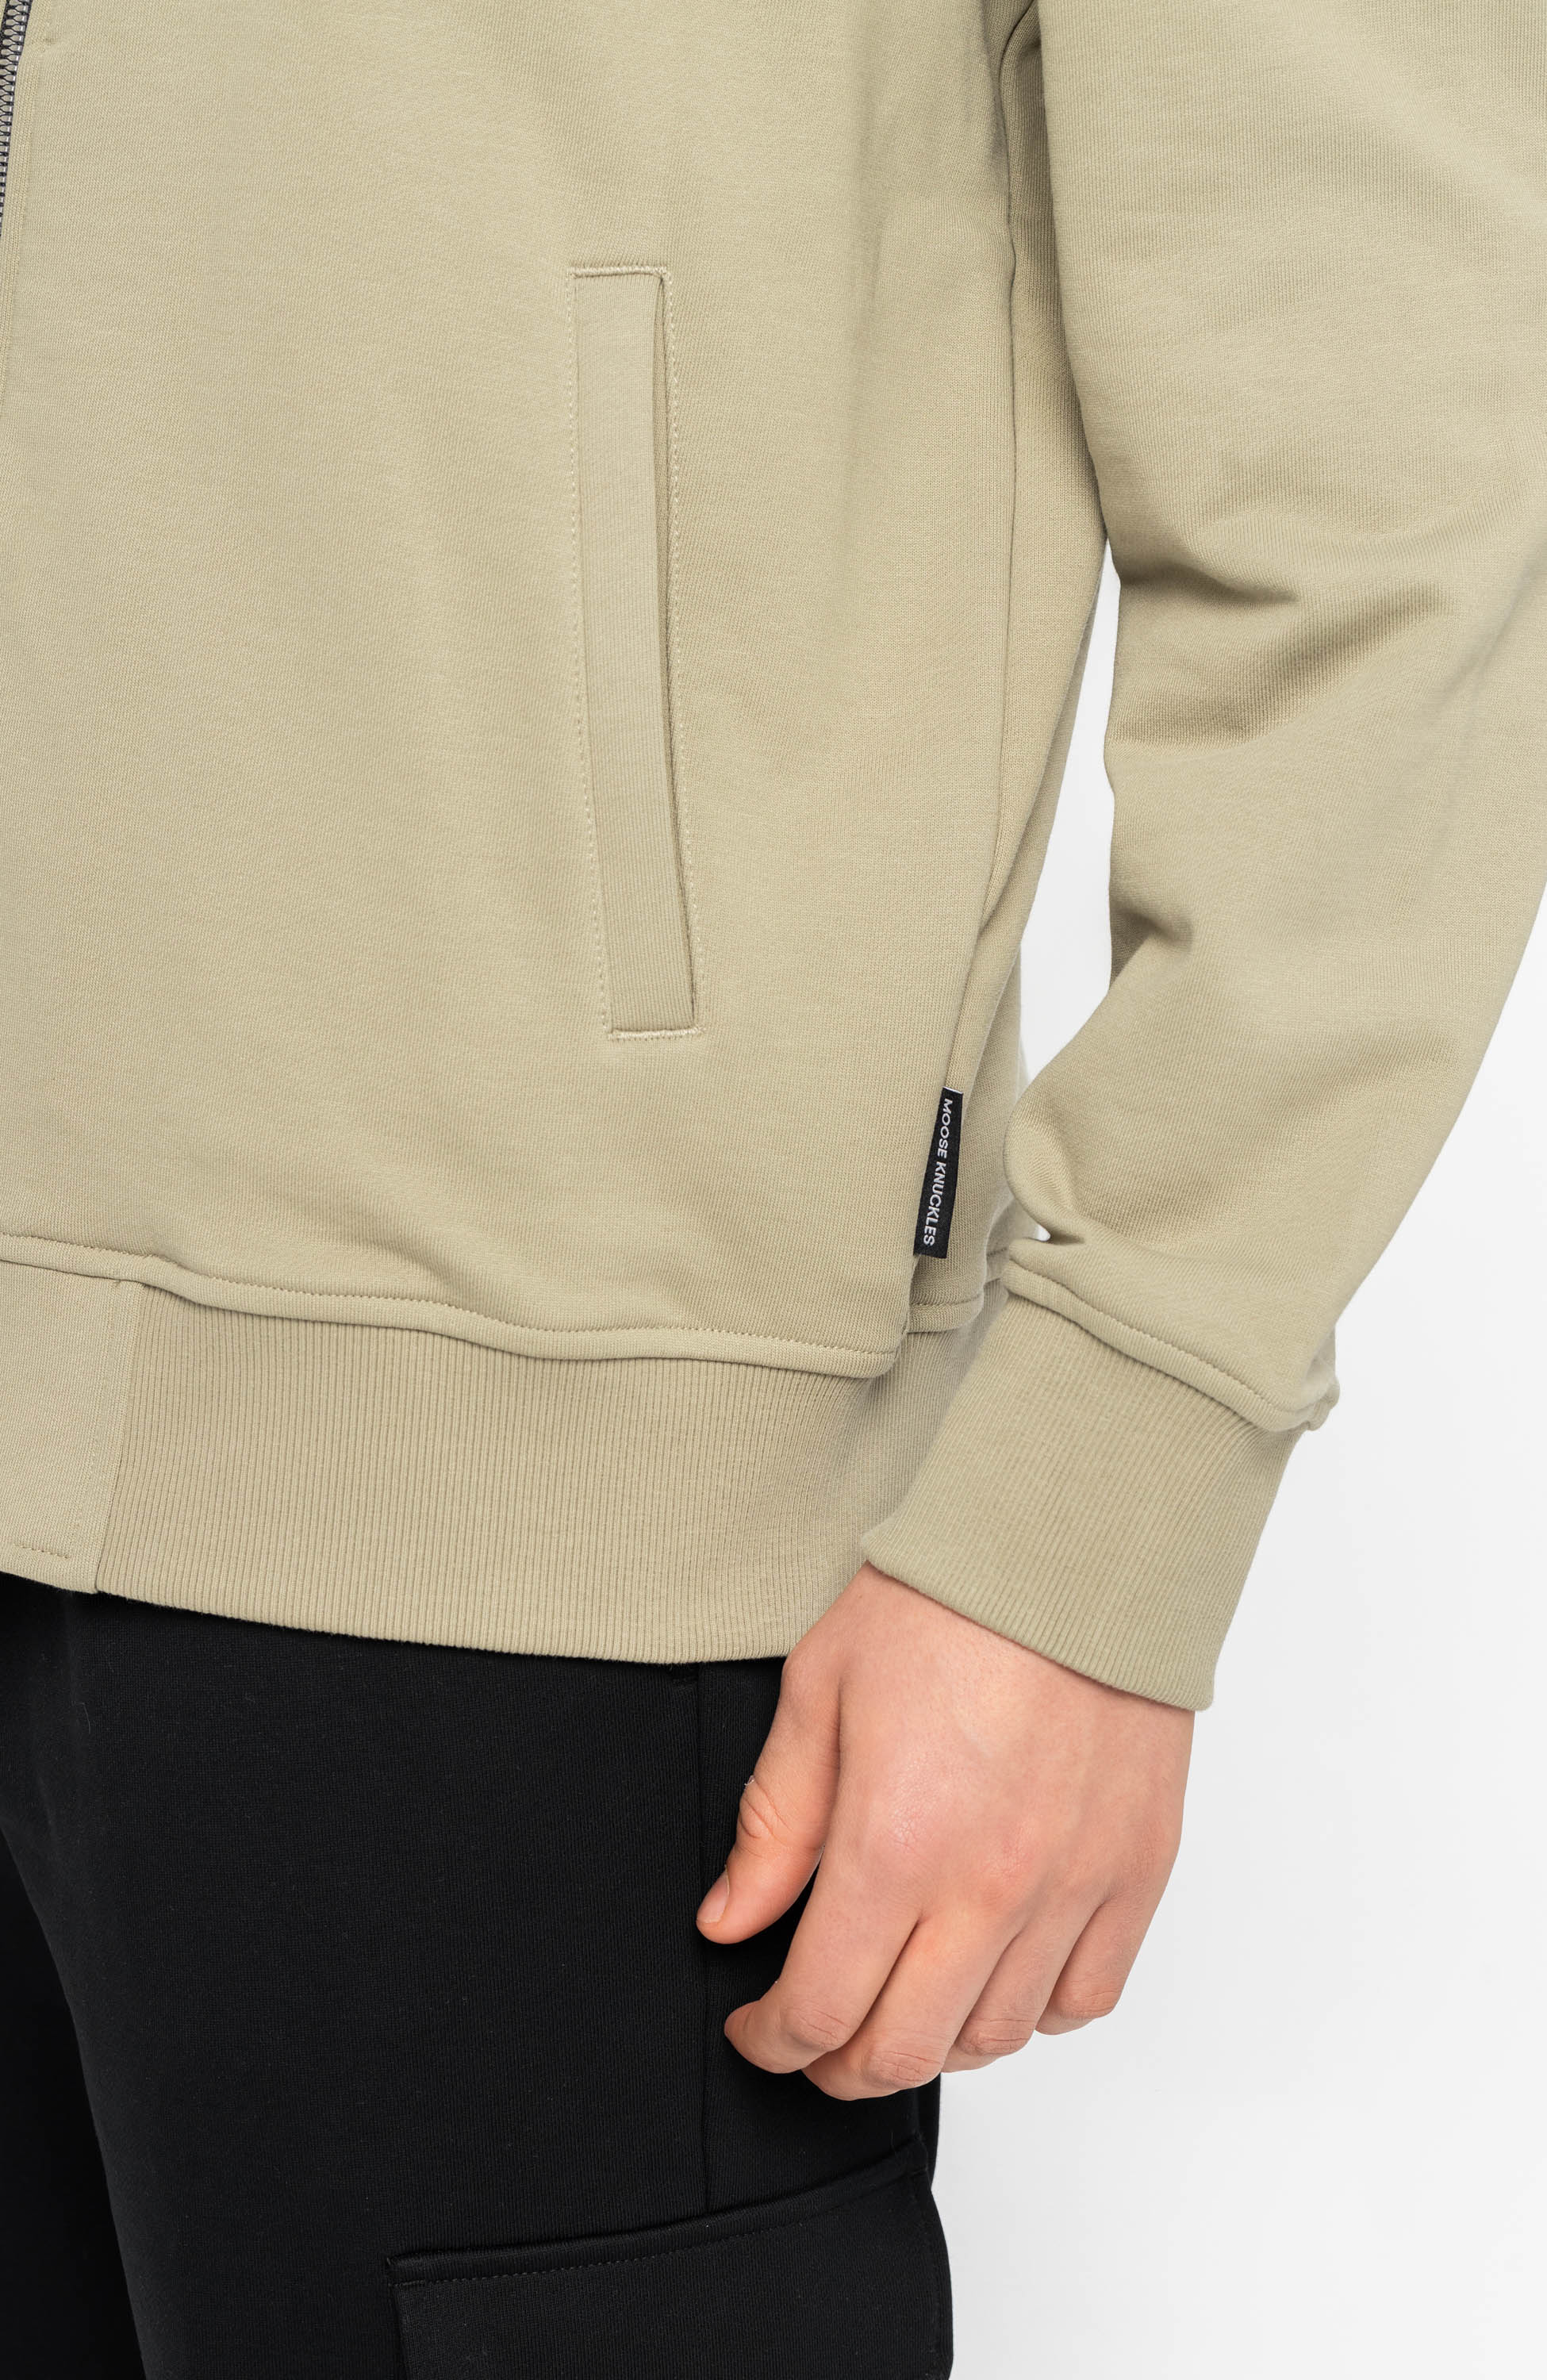 Hooded zip-up sweatshirt HARTSFIELD